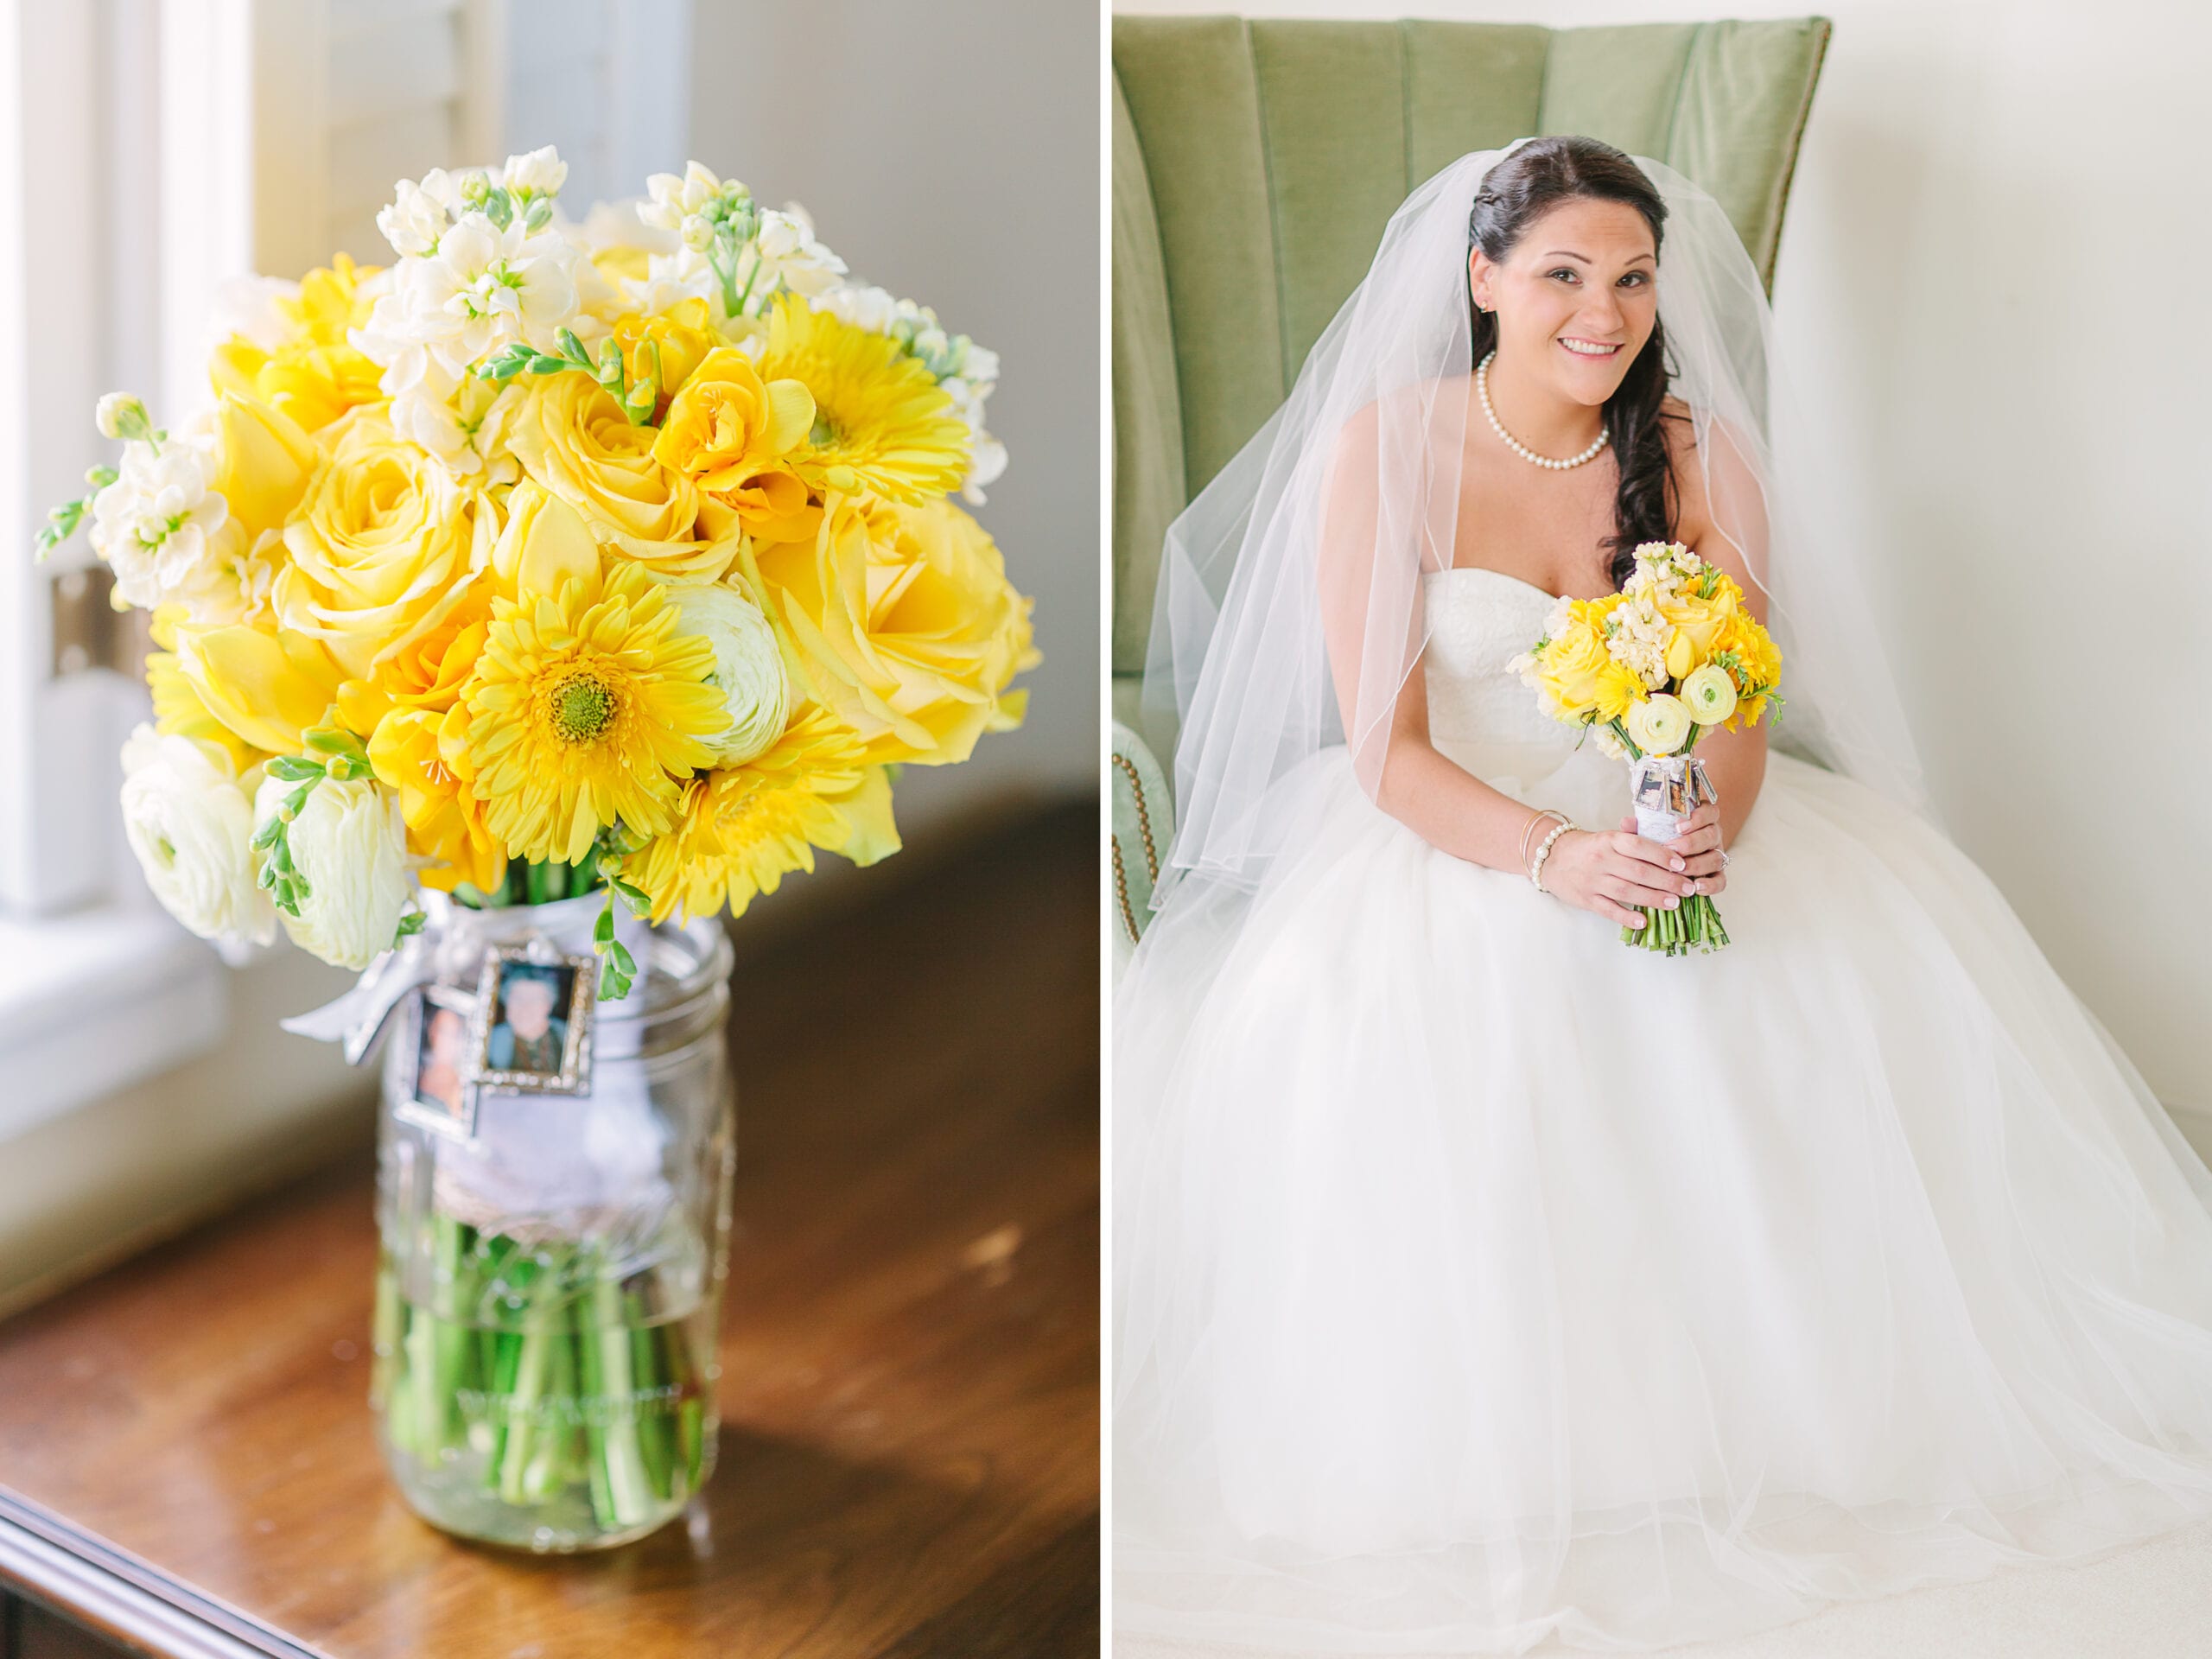 Walker's Overlook Frederick, Maryland Wedding | Yellow & Gray Spring Wedding